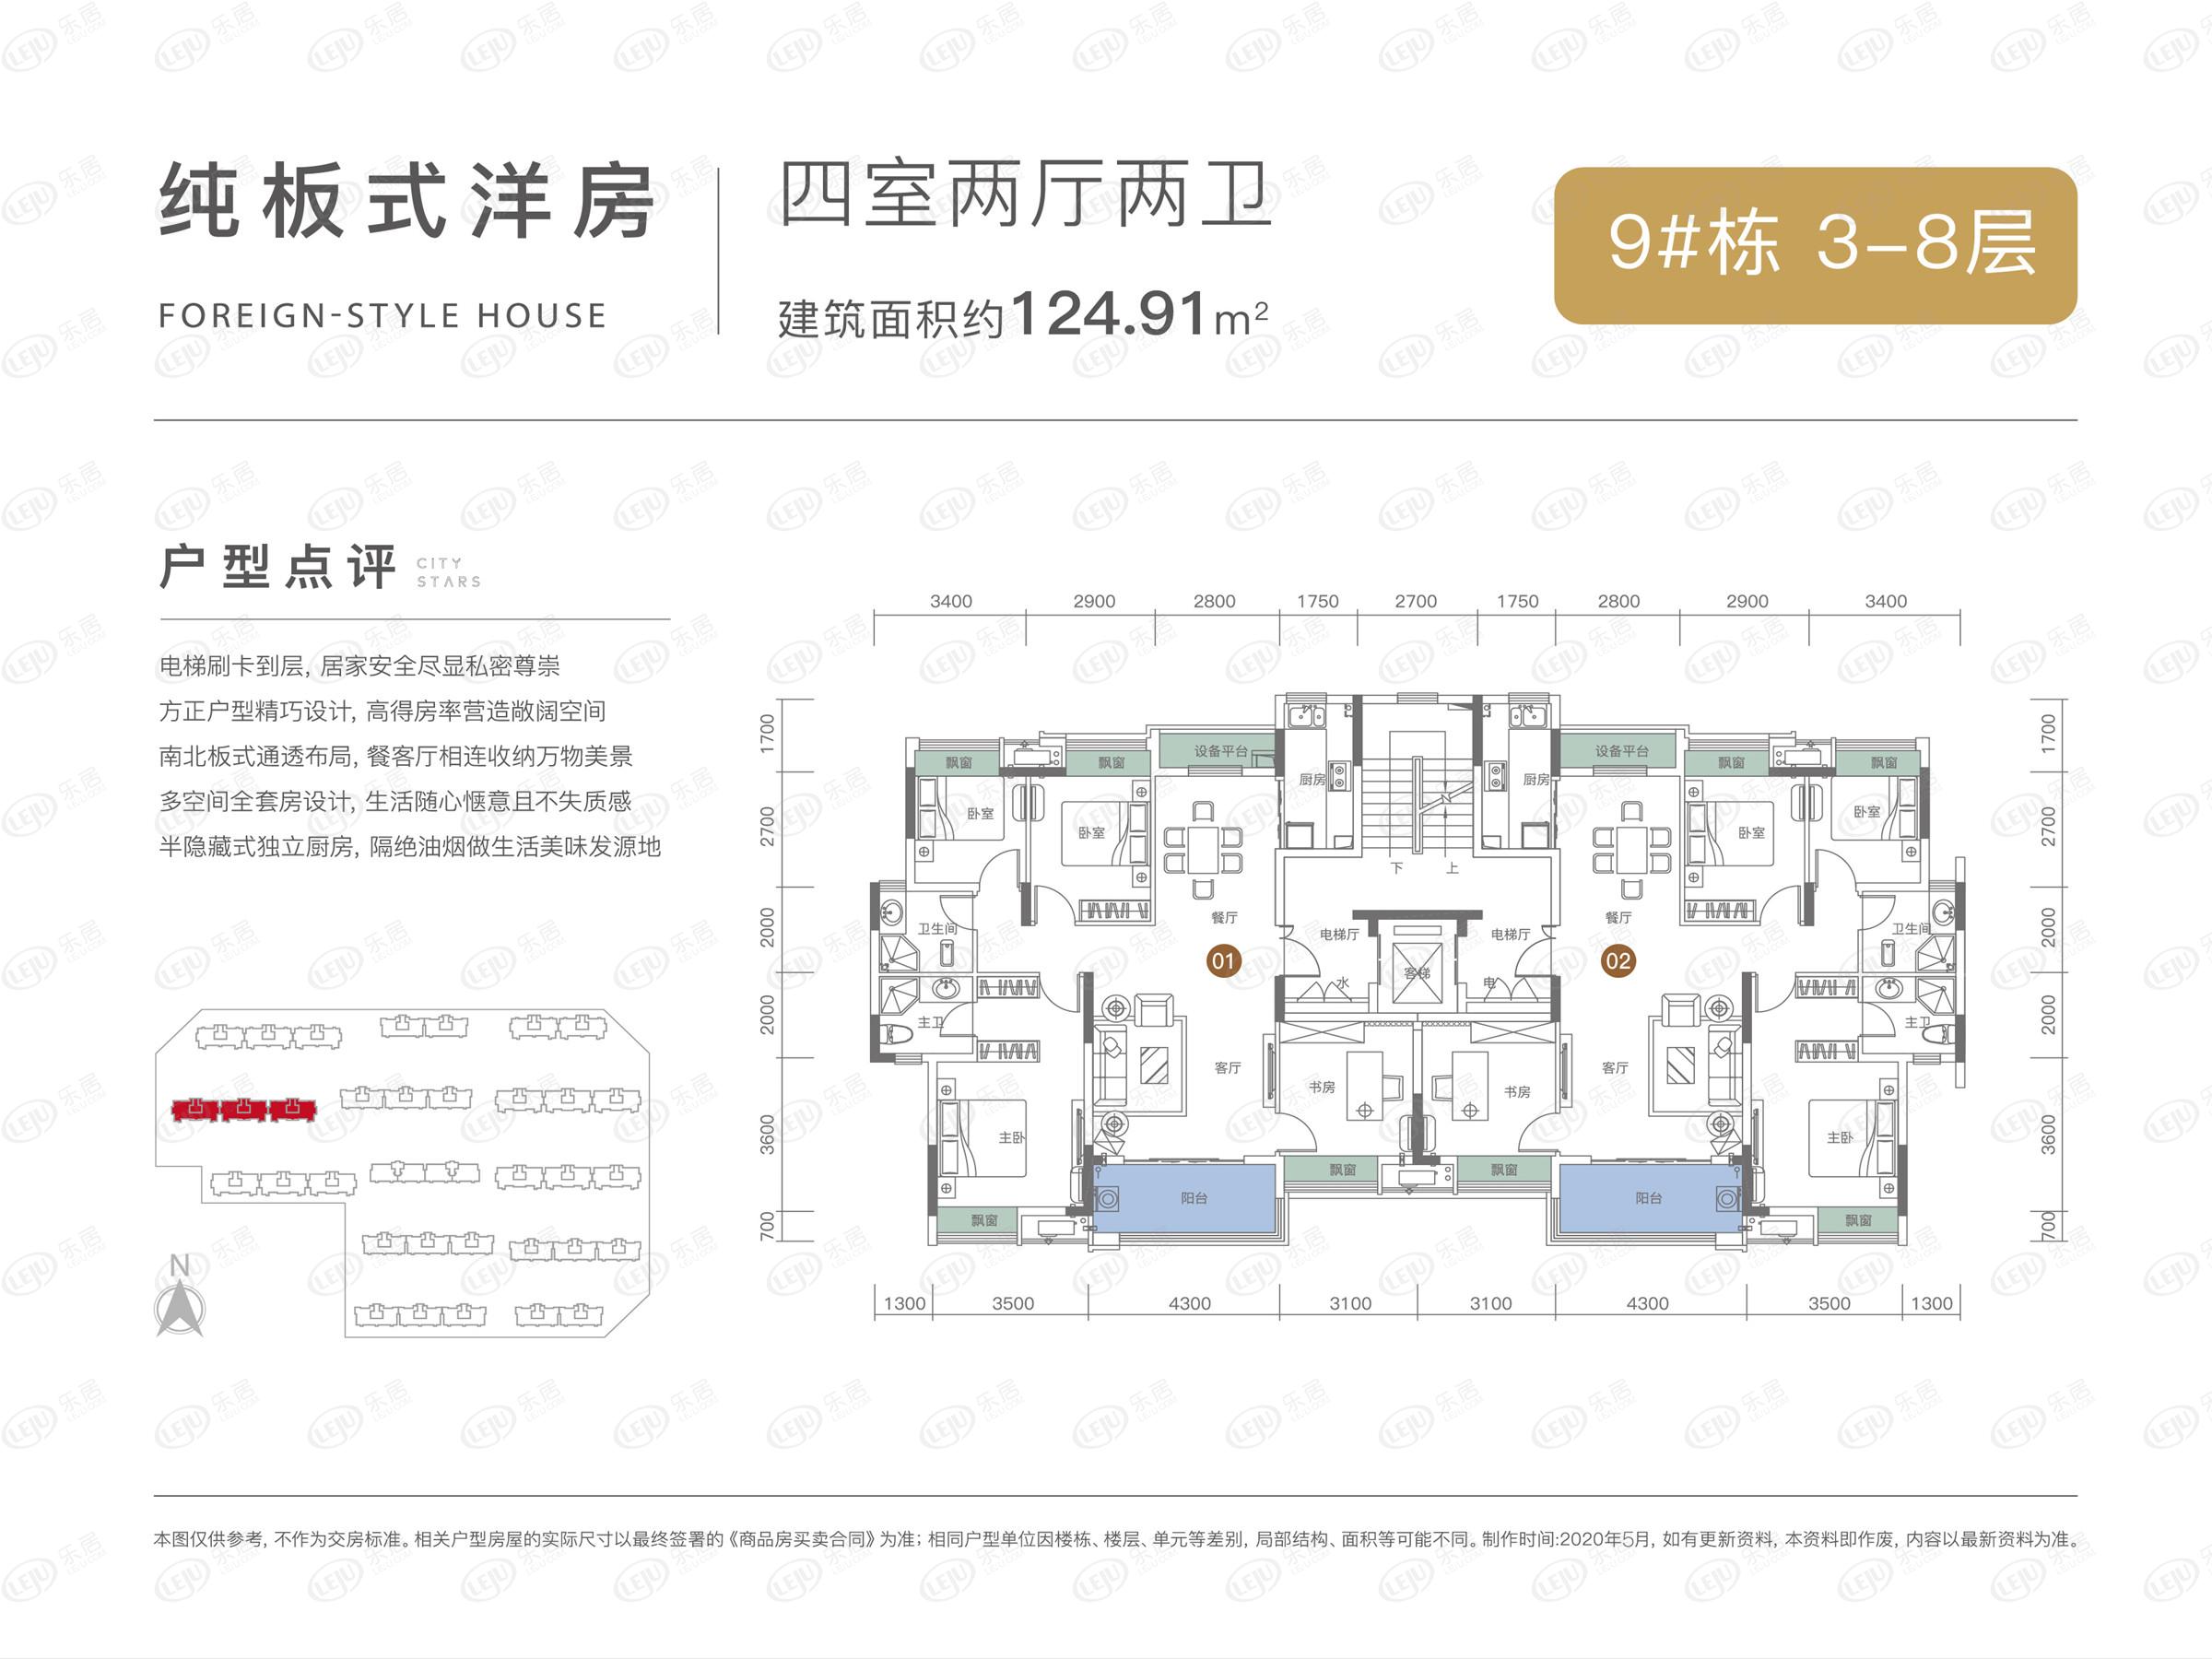 永州冷水滩中建·滨江新城正在热销 单价约6300元/㎡